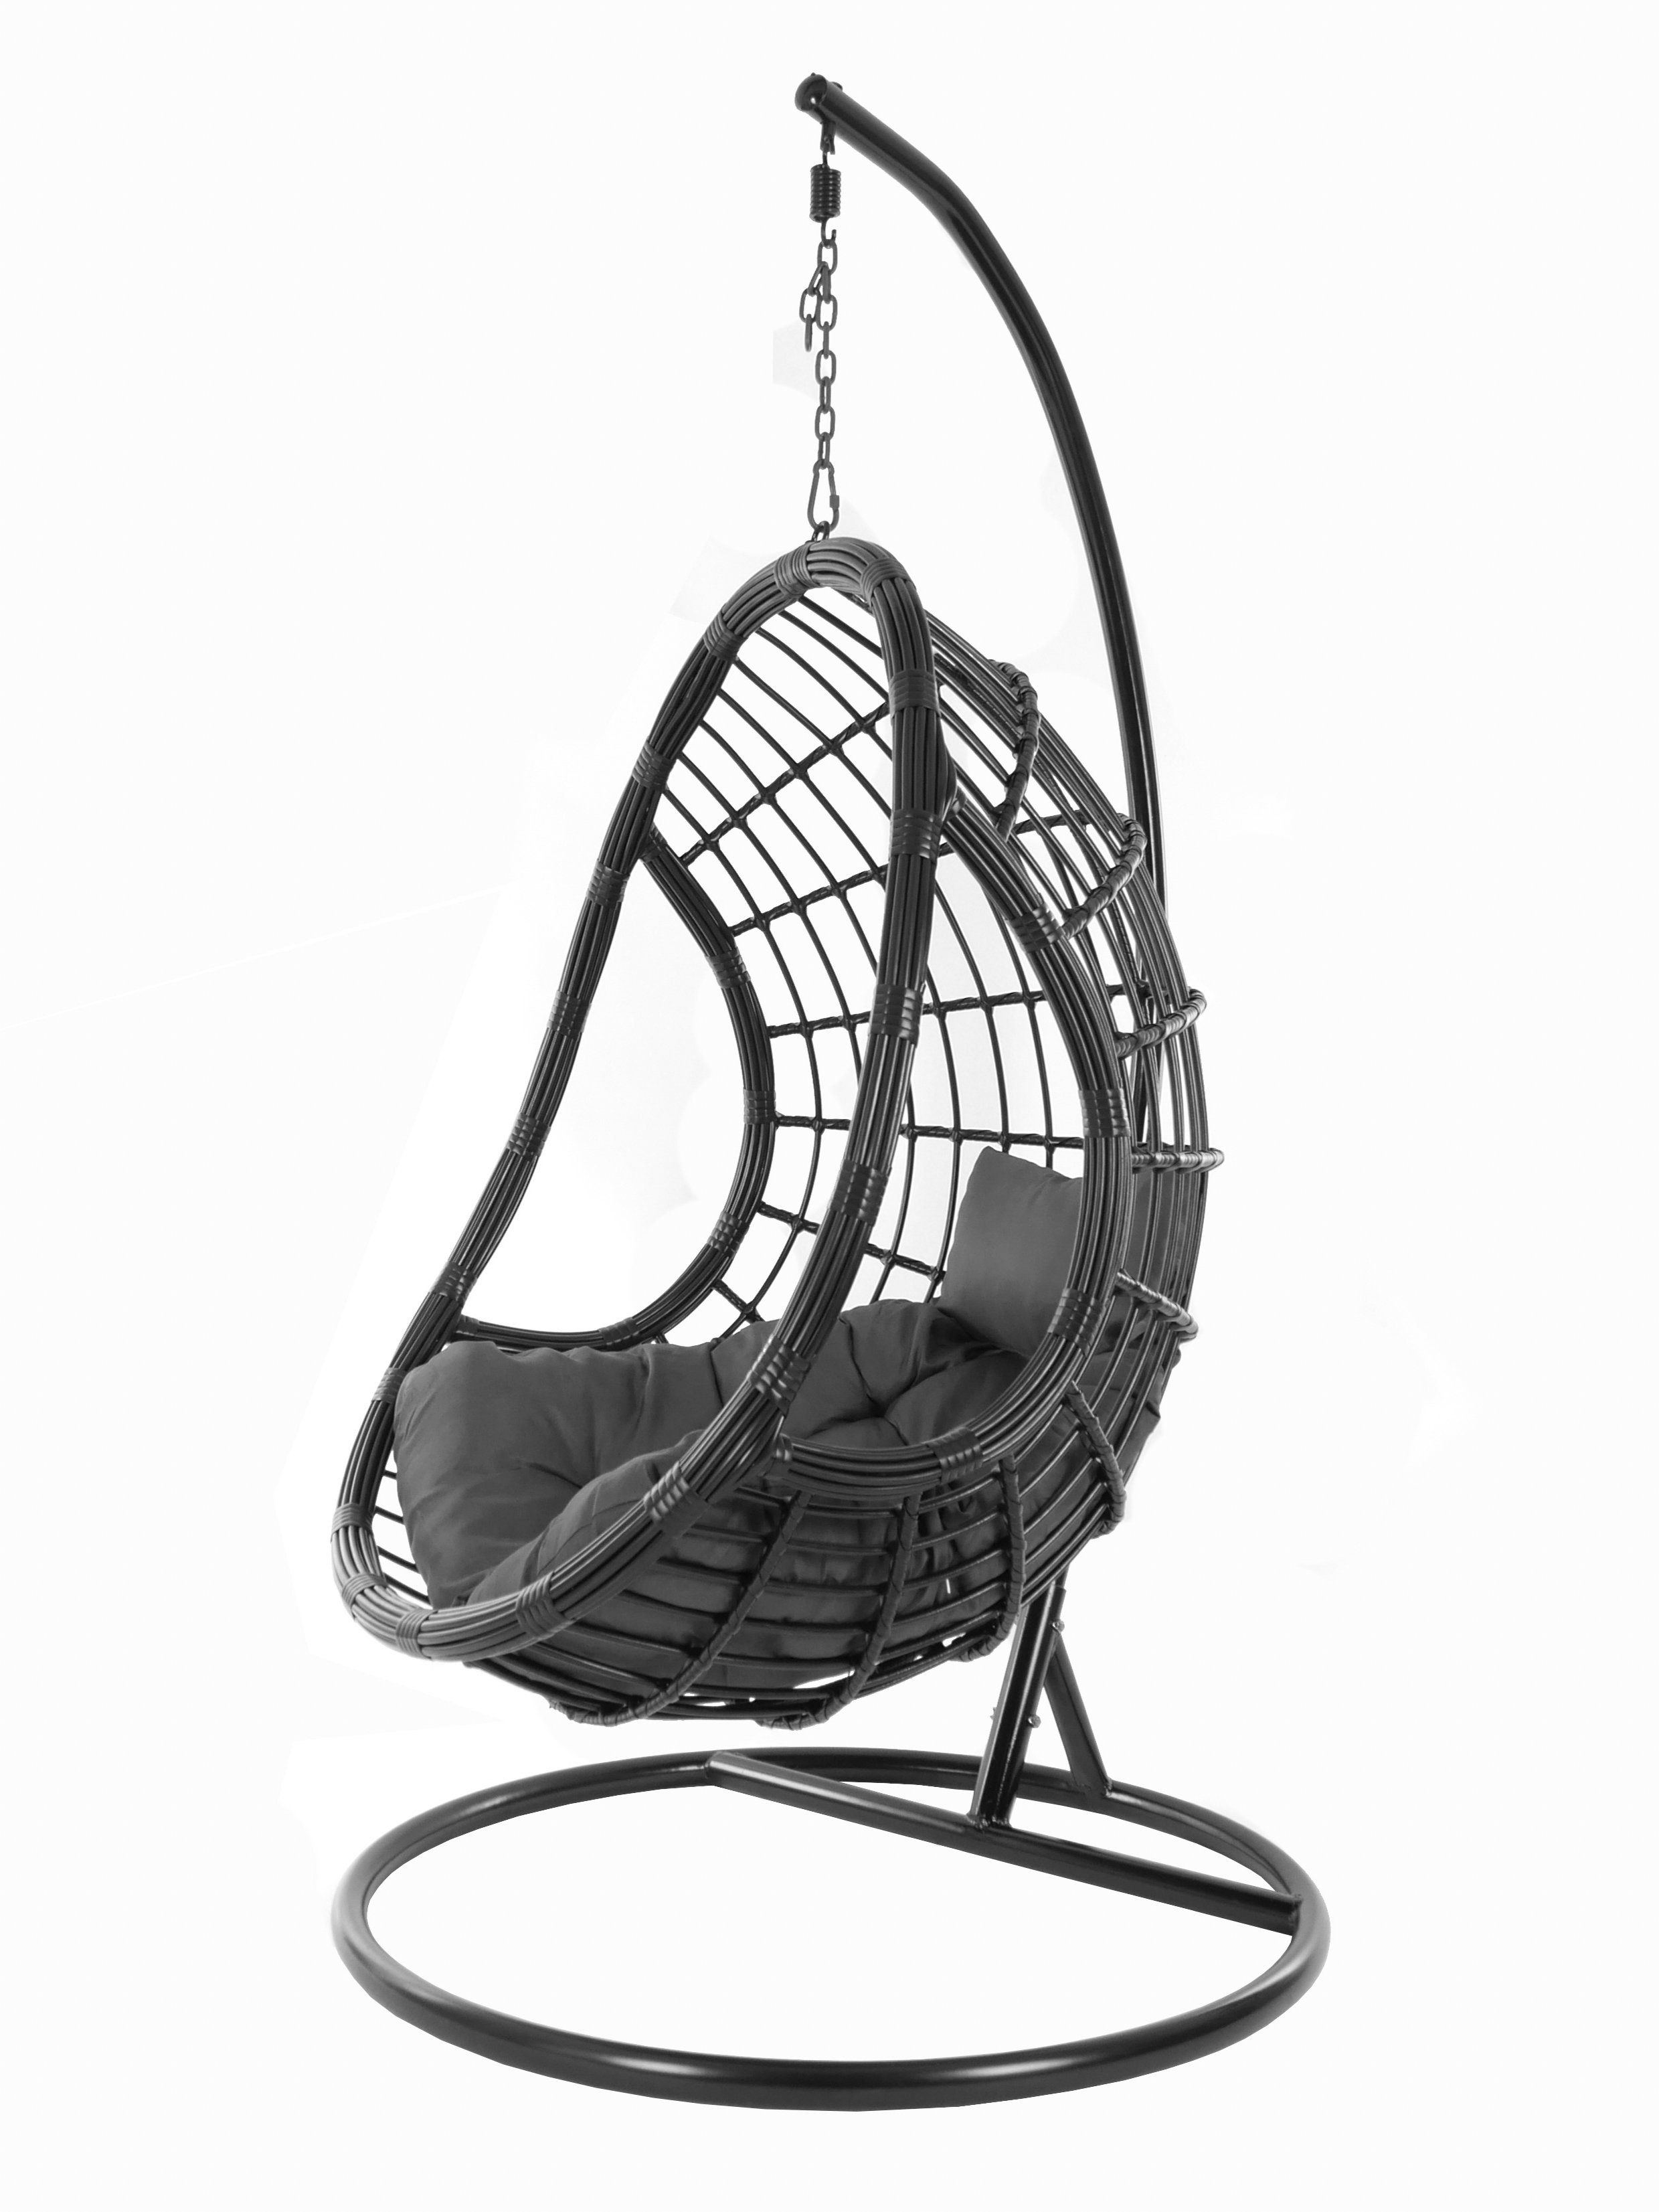 KIDEO Hängesessel PALMANOVA black, Swing edles Kissen, Chair, schwarz, und (8999 Design shadow) dunkelgrau Gestell Hängesessel mit Loungemöbel, Schwebesessel